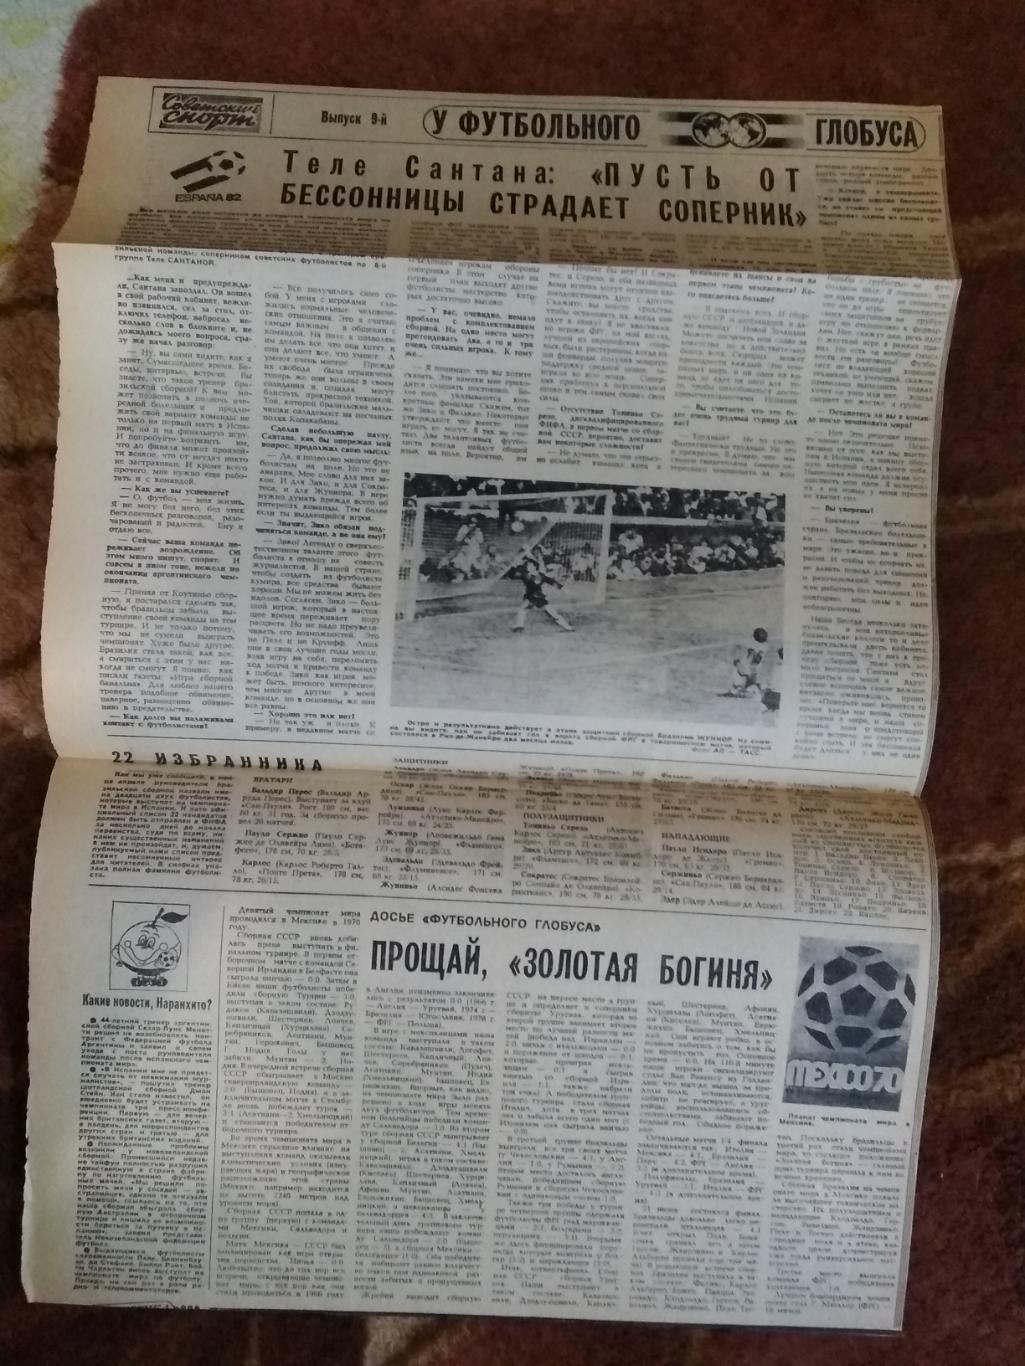 У футбольного глобуса № 9 23.05.1982 г. Советский спорт. (ЧМ 1982).